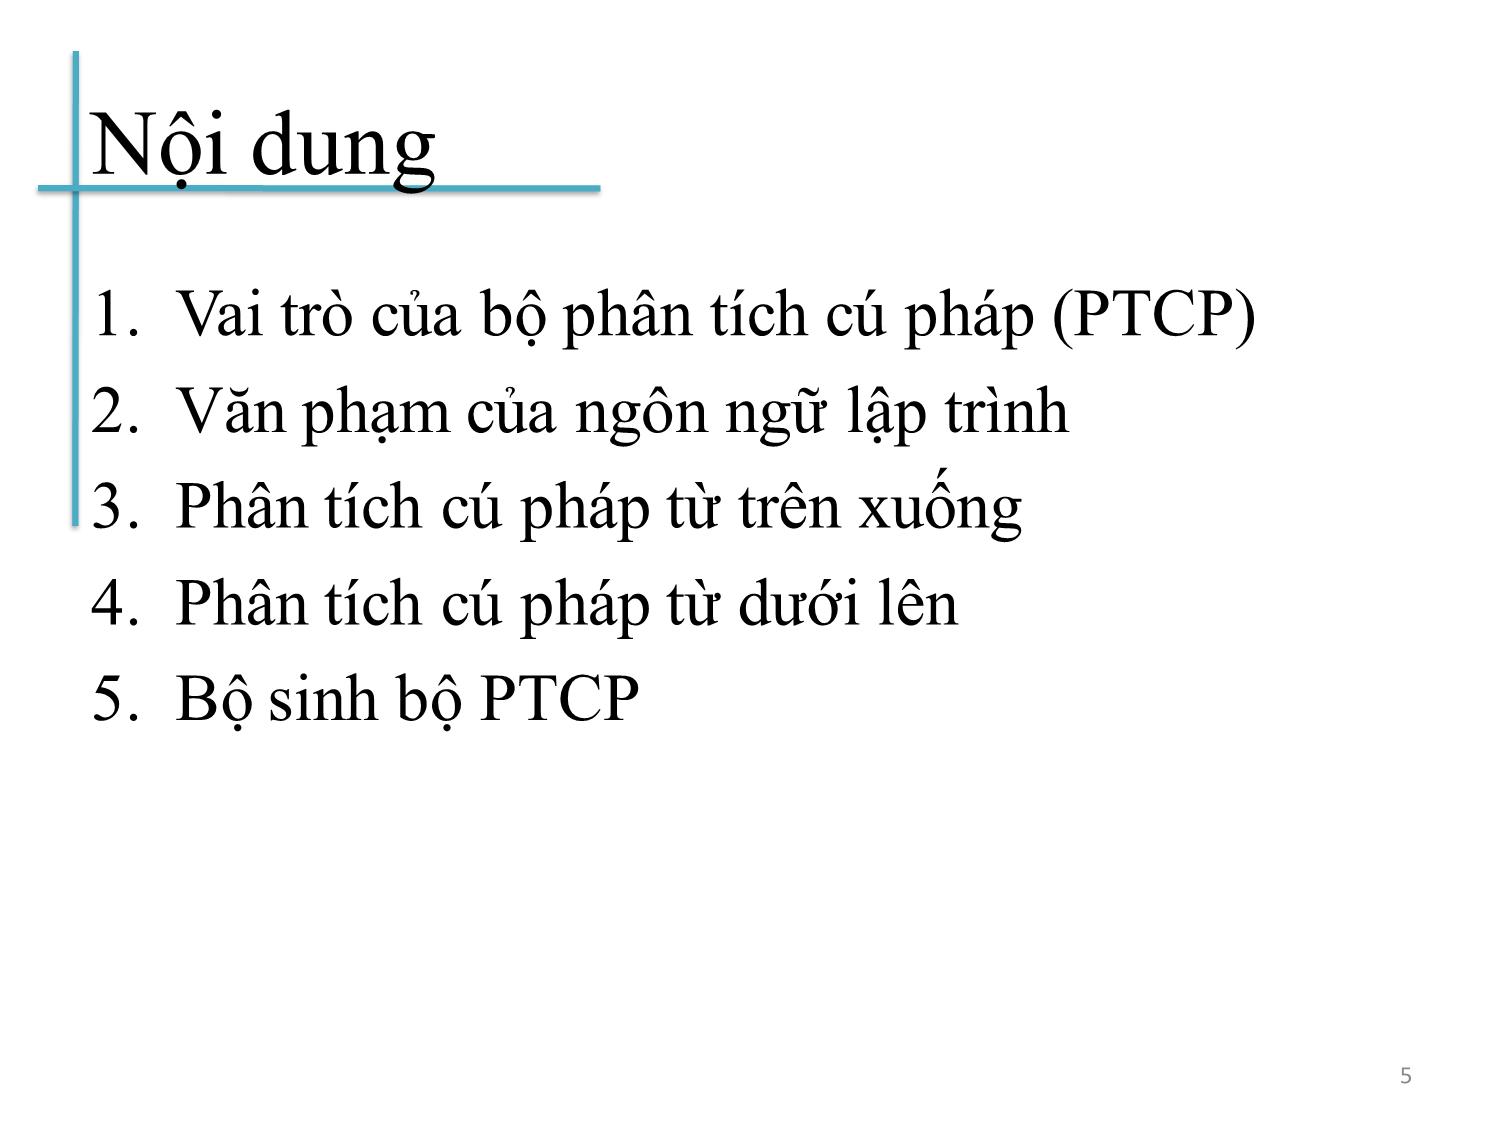 Bài giảng Chương trình dịch - Bài 3: Phân tích cú pháp từ trên xuống - Hoàng Anh Việt trang 5